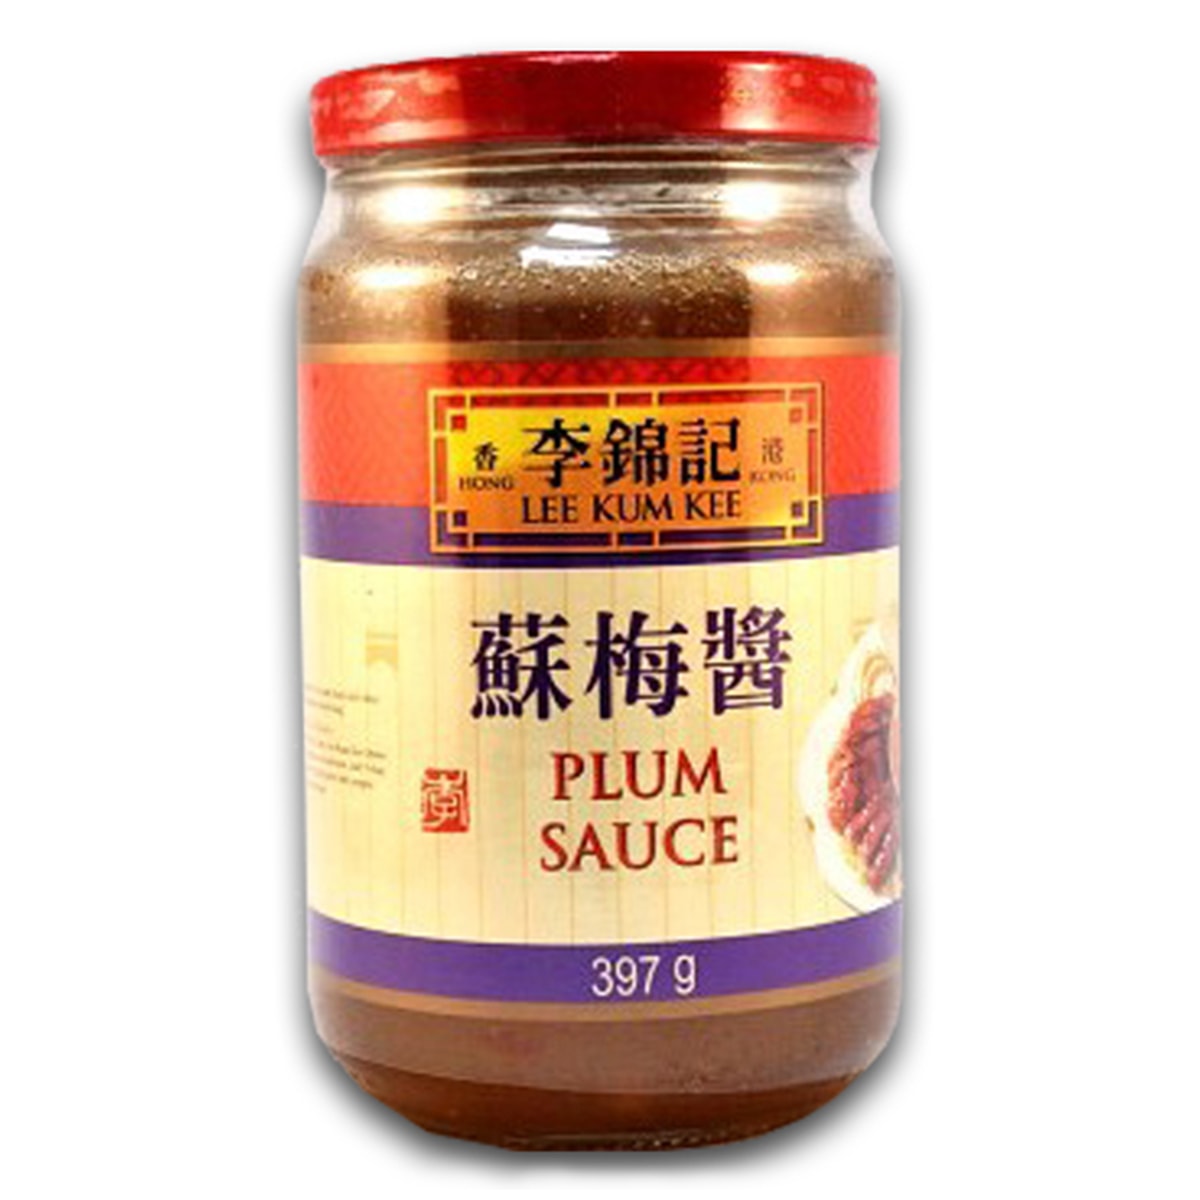 Buy Lee Kum Kee Plum Sauce - 397 gm